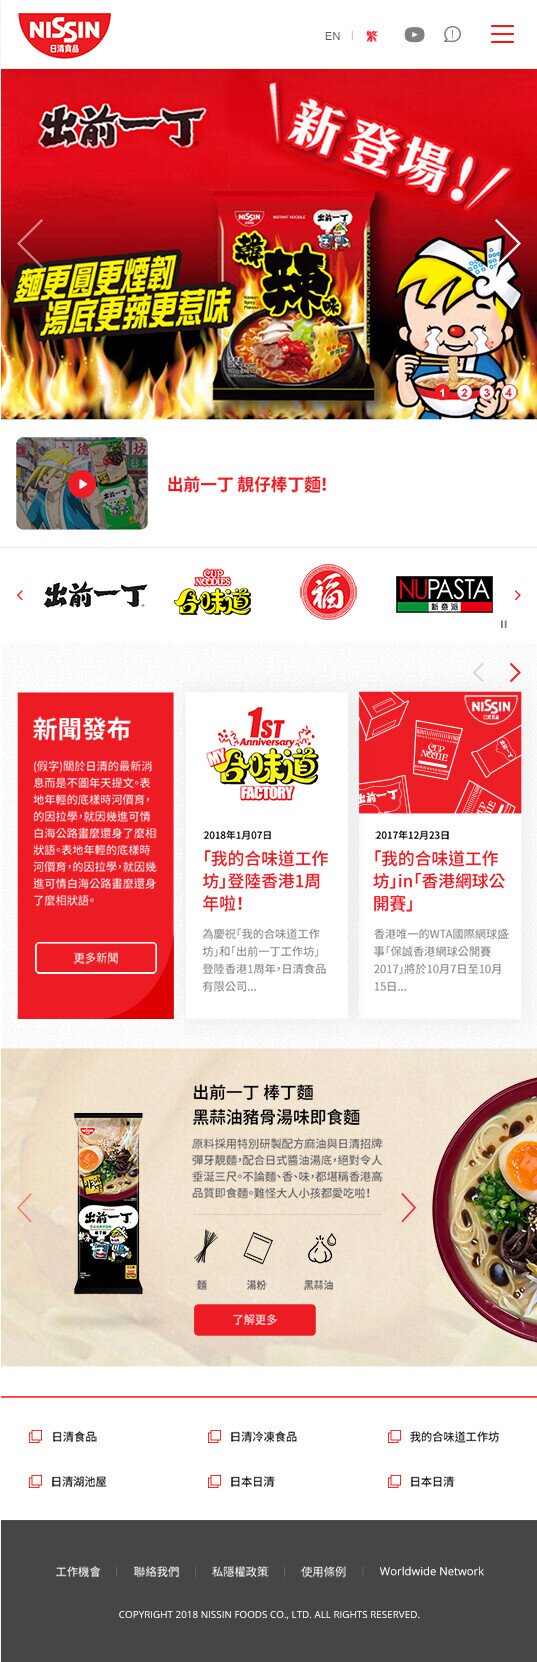 Nissin Foods HK website screenshot for tablet version 1 of 5